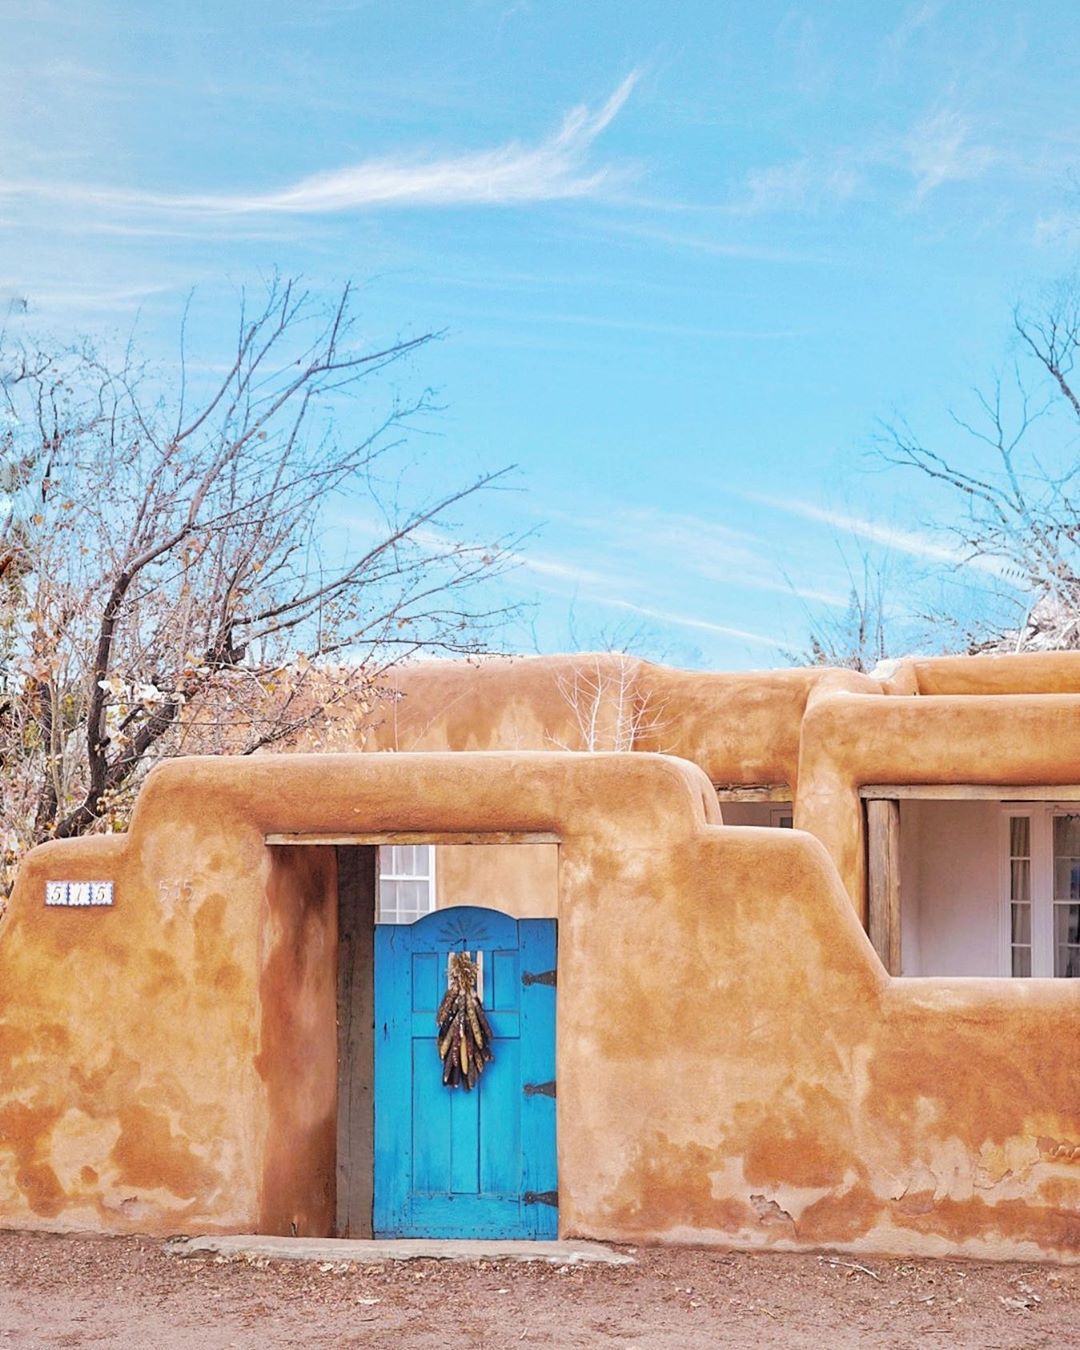 Pueblo-Style Homes